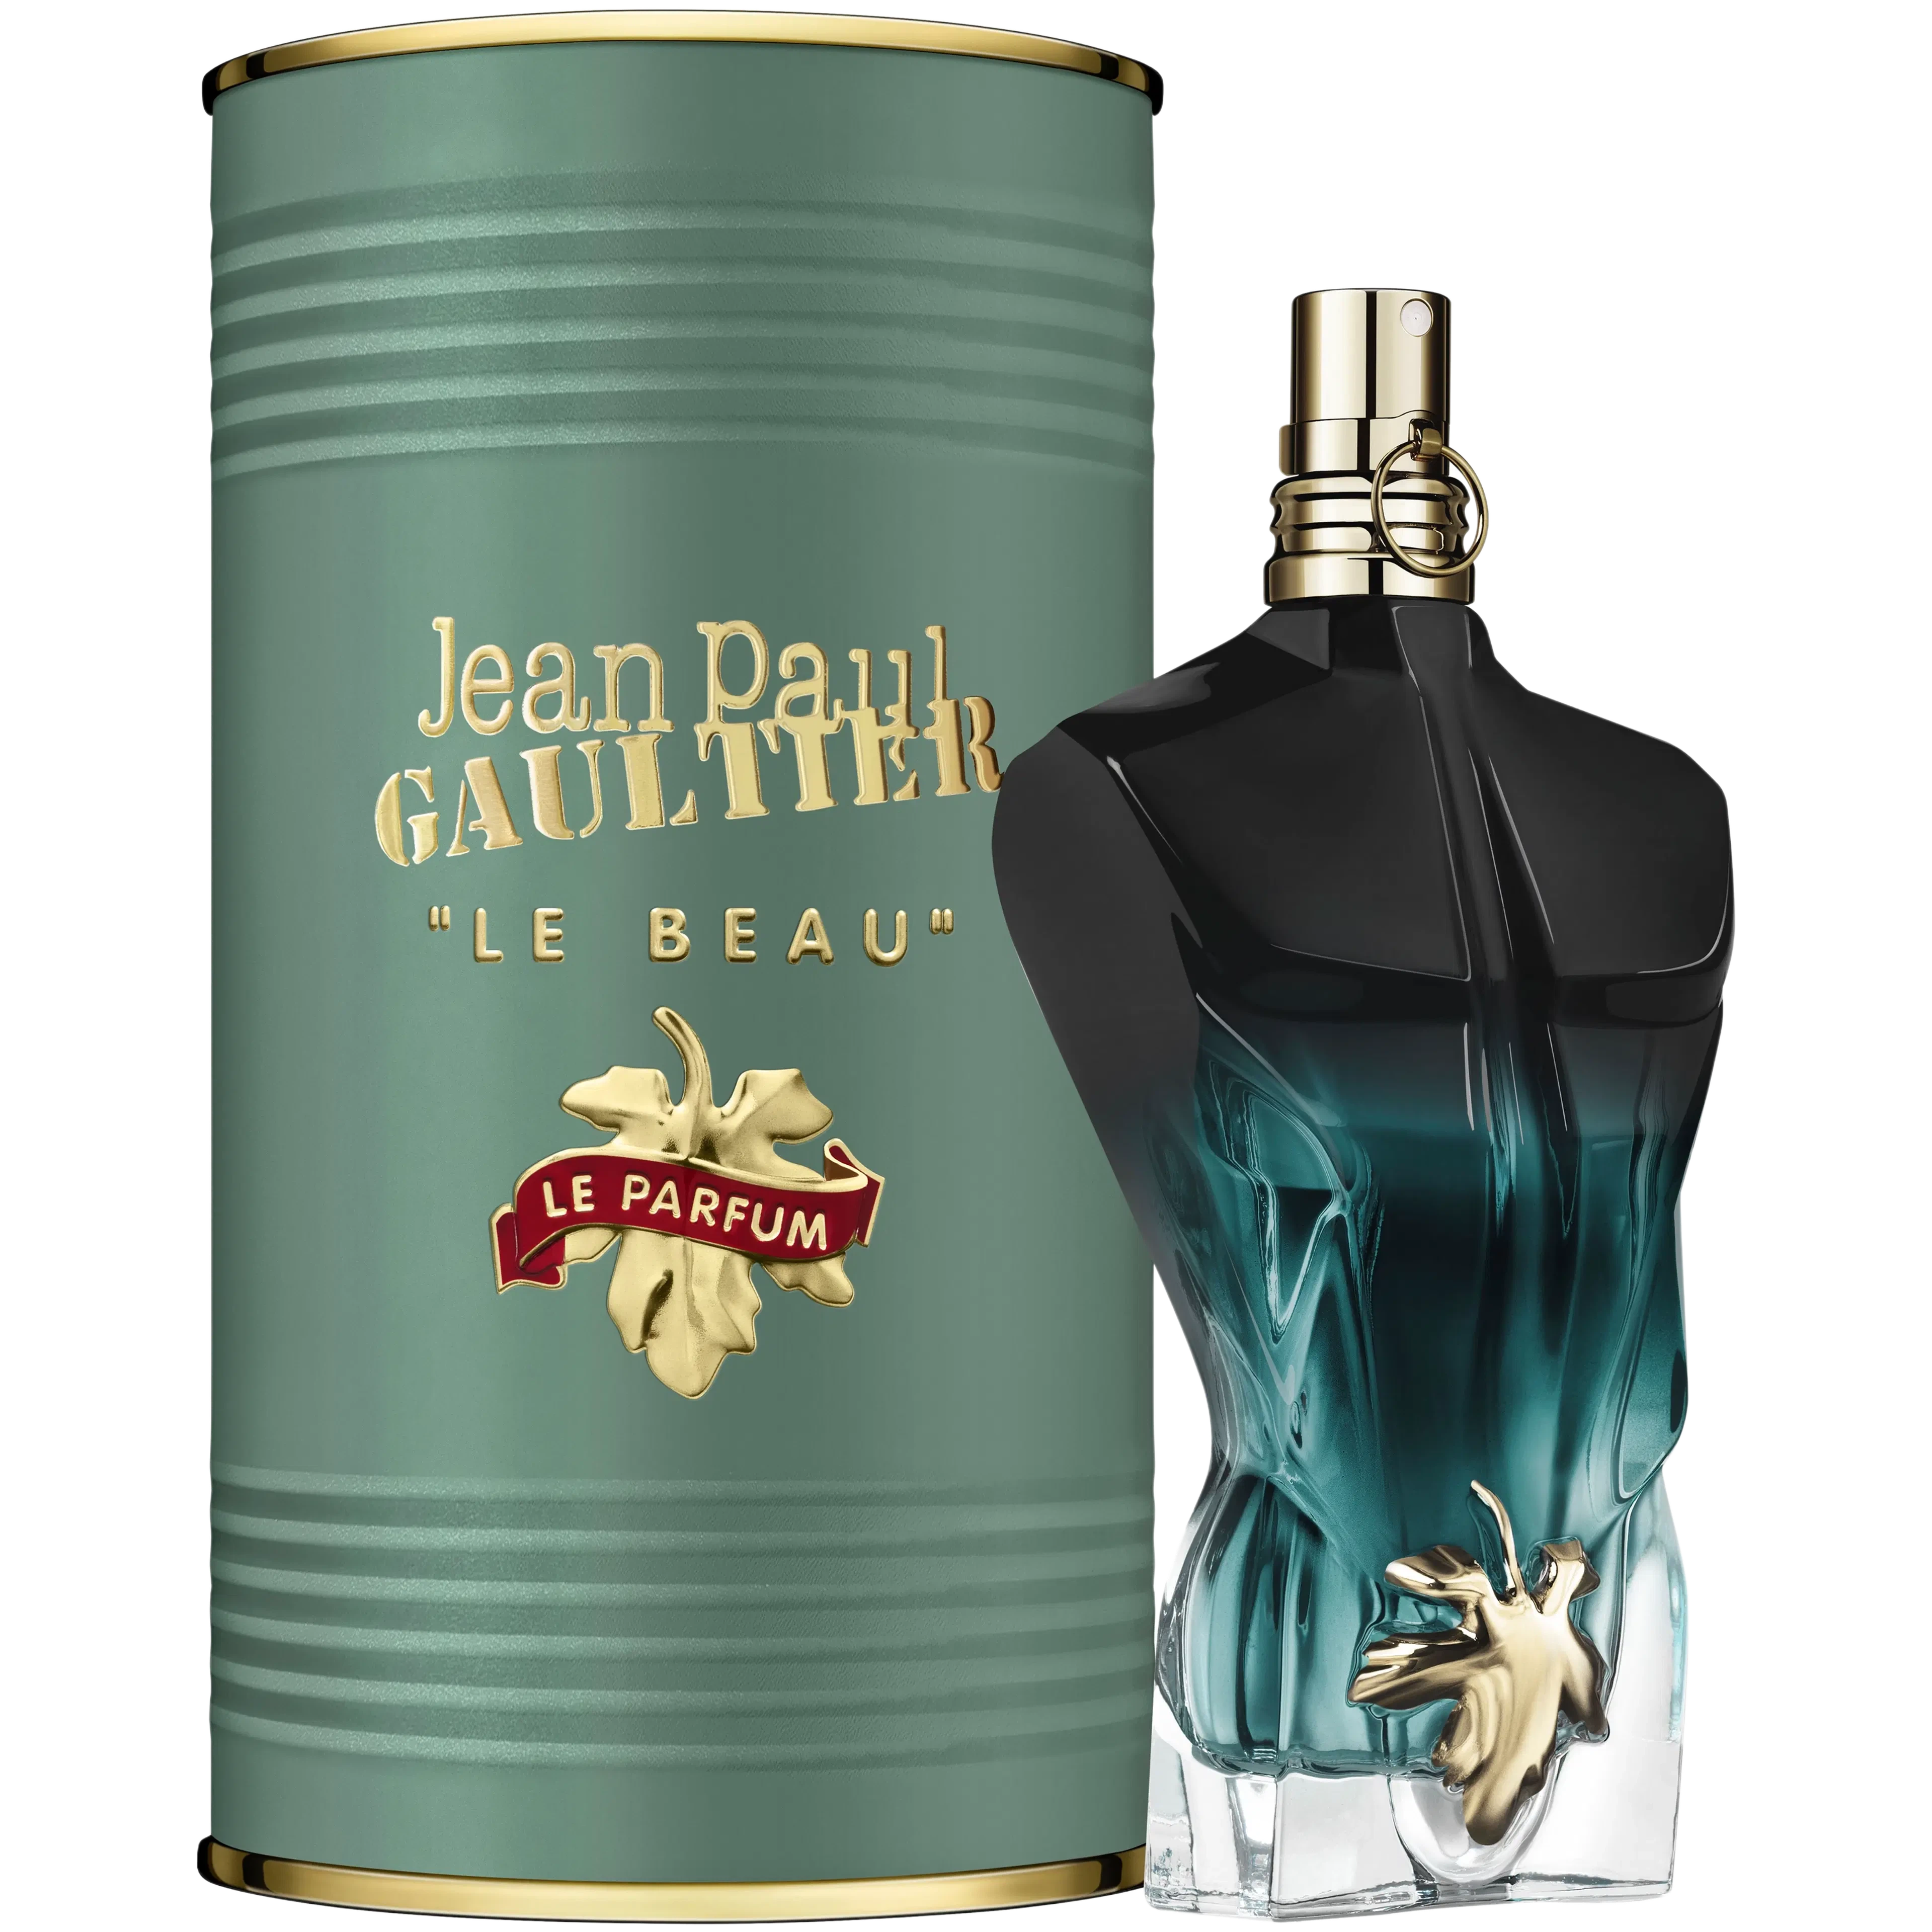 Perfume Jean Paul Gaultier Le Beau Le Parfum EDP (M) / 75 ml - 8435415062213- 1 - Prive Perfumes Honduras